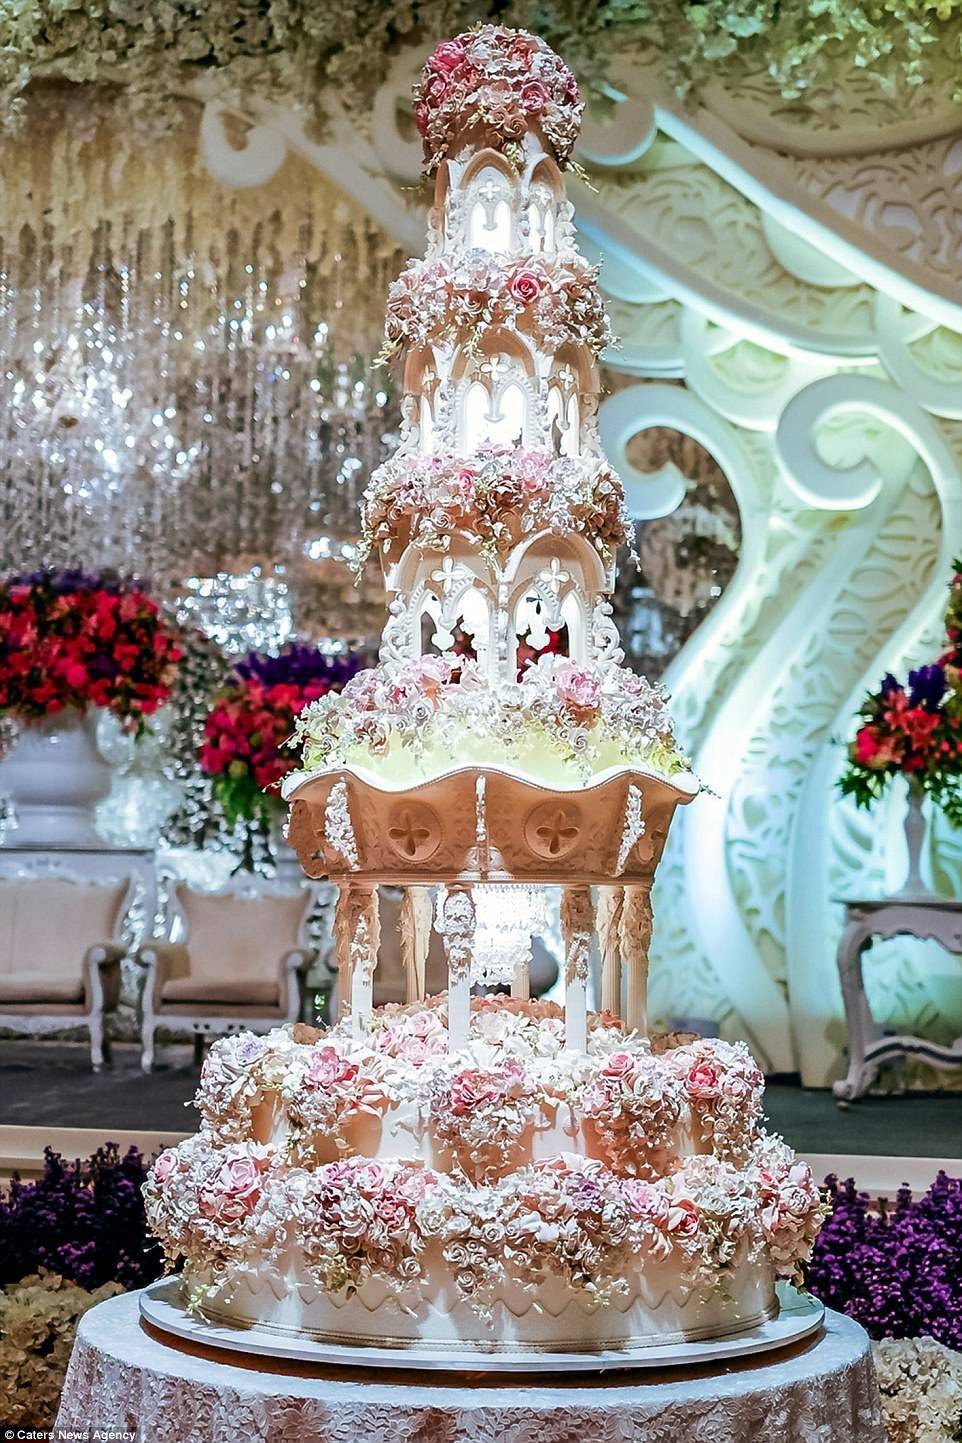 Самые красивые свадебные торты: фото с описанием